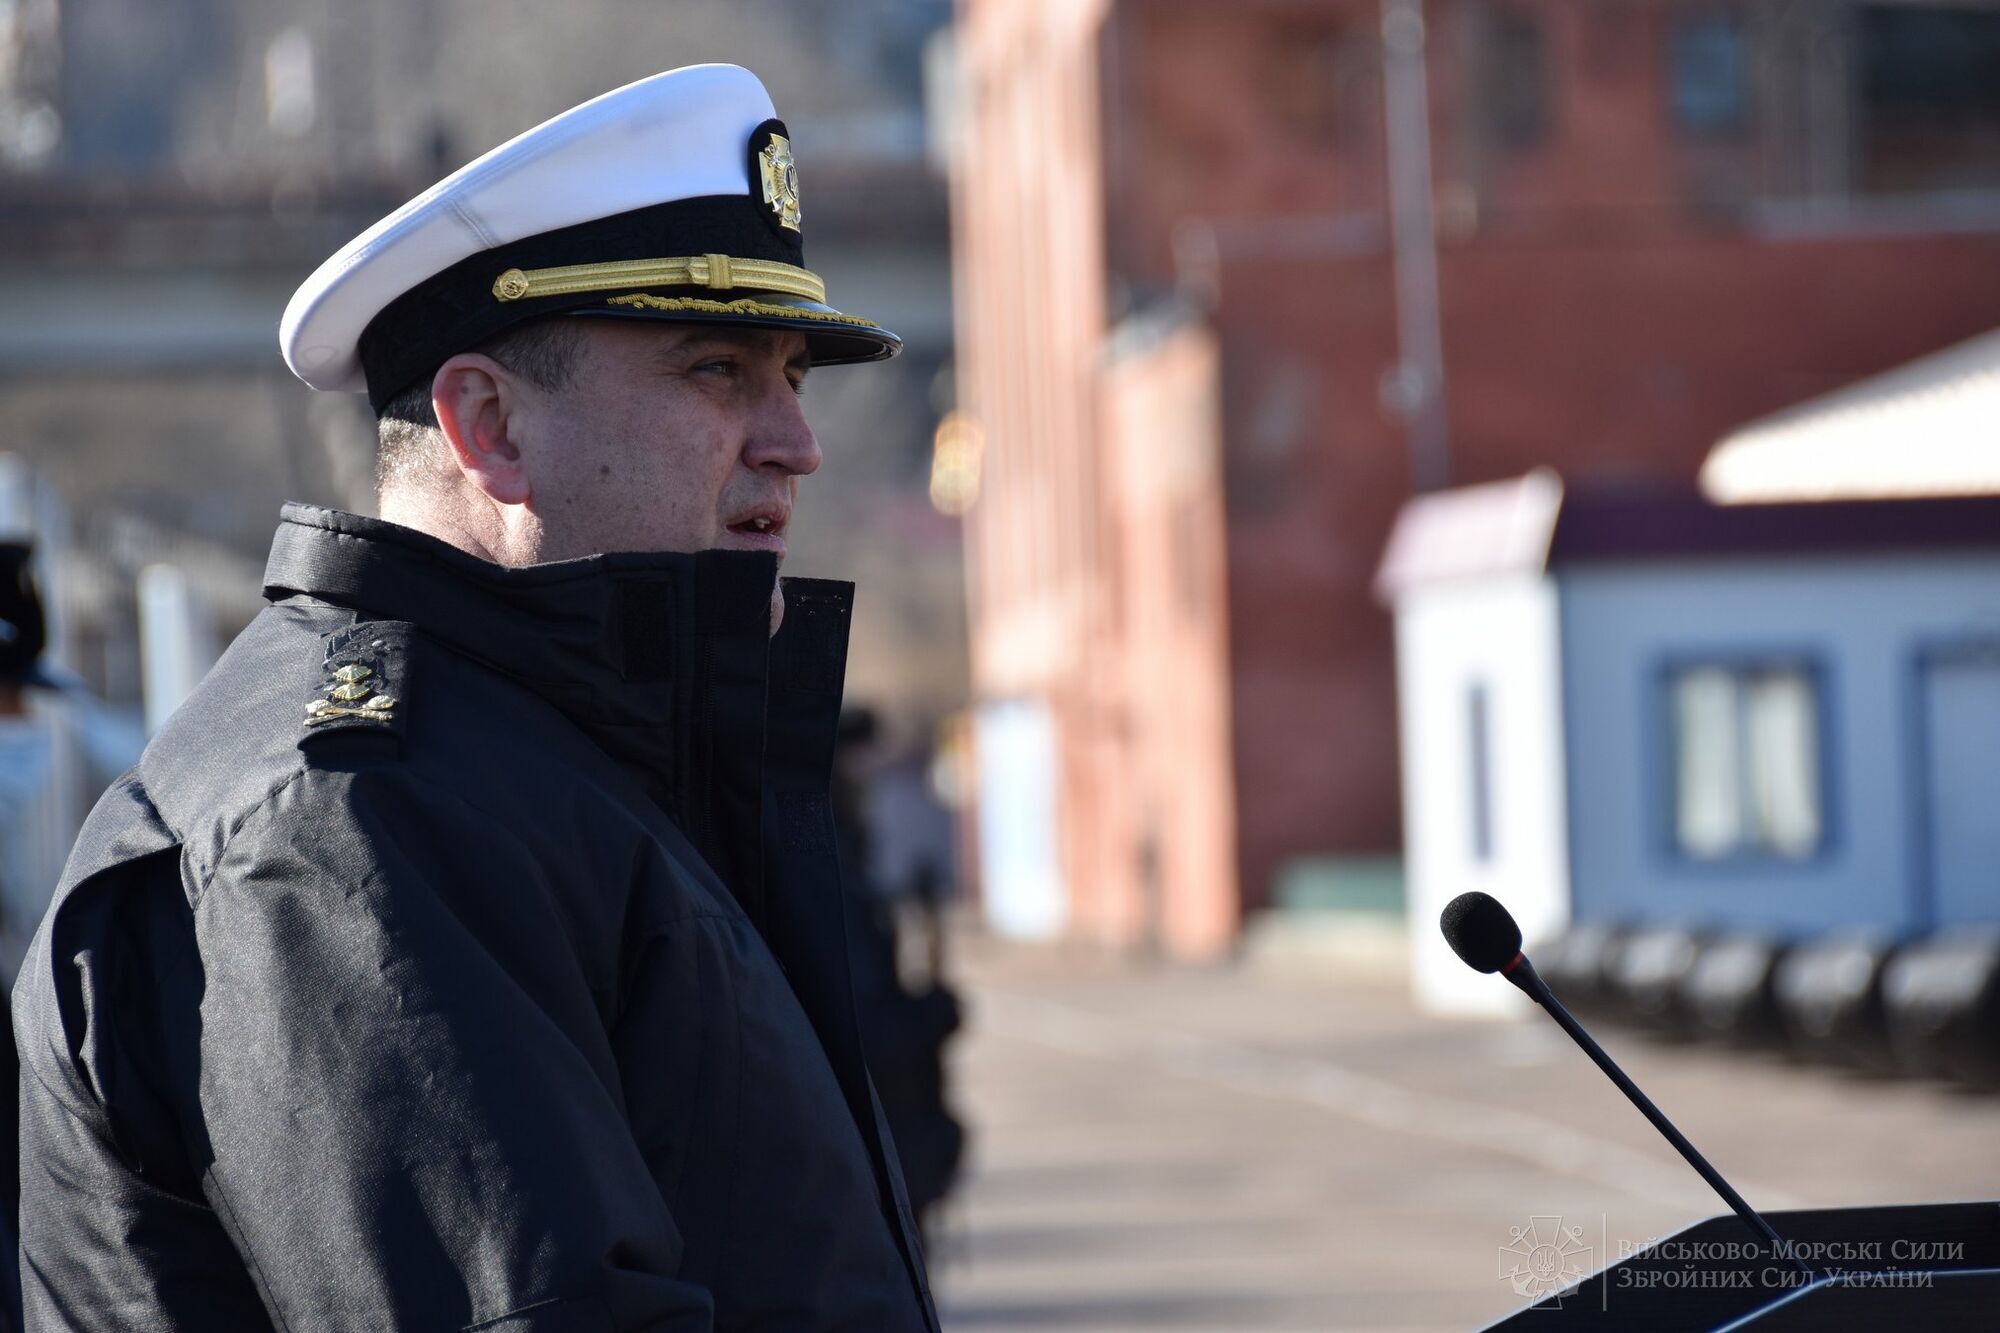 США передали ВМС Украины бронированные внедорожники "Хамви" и более 80 лодок. Фото